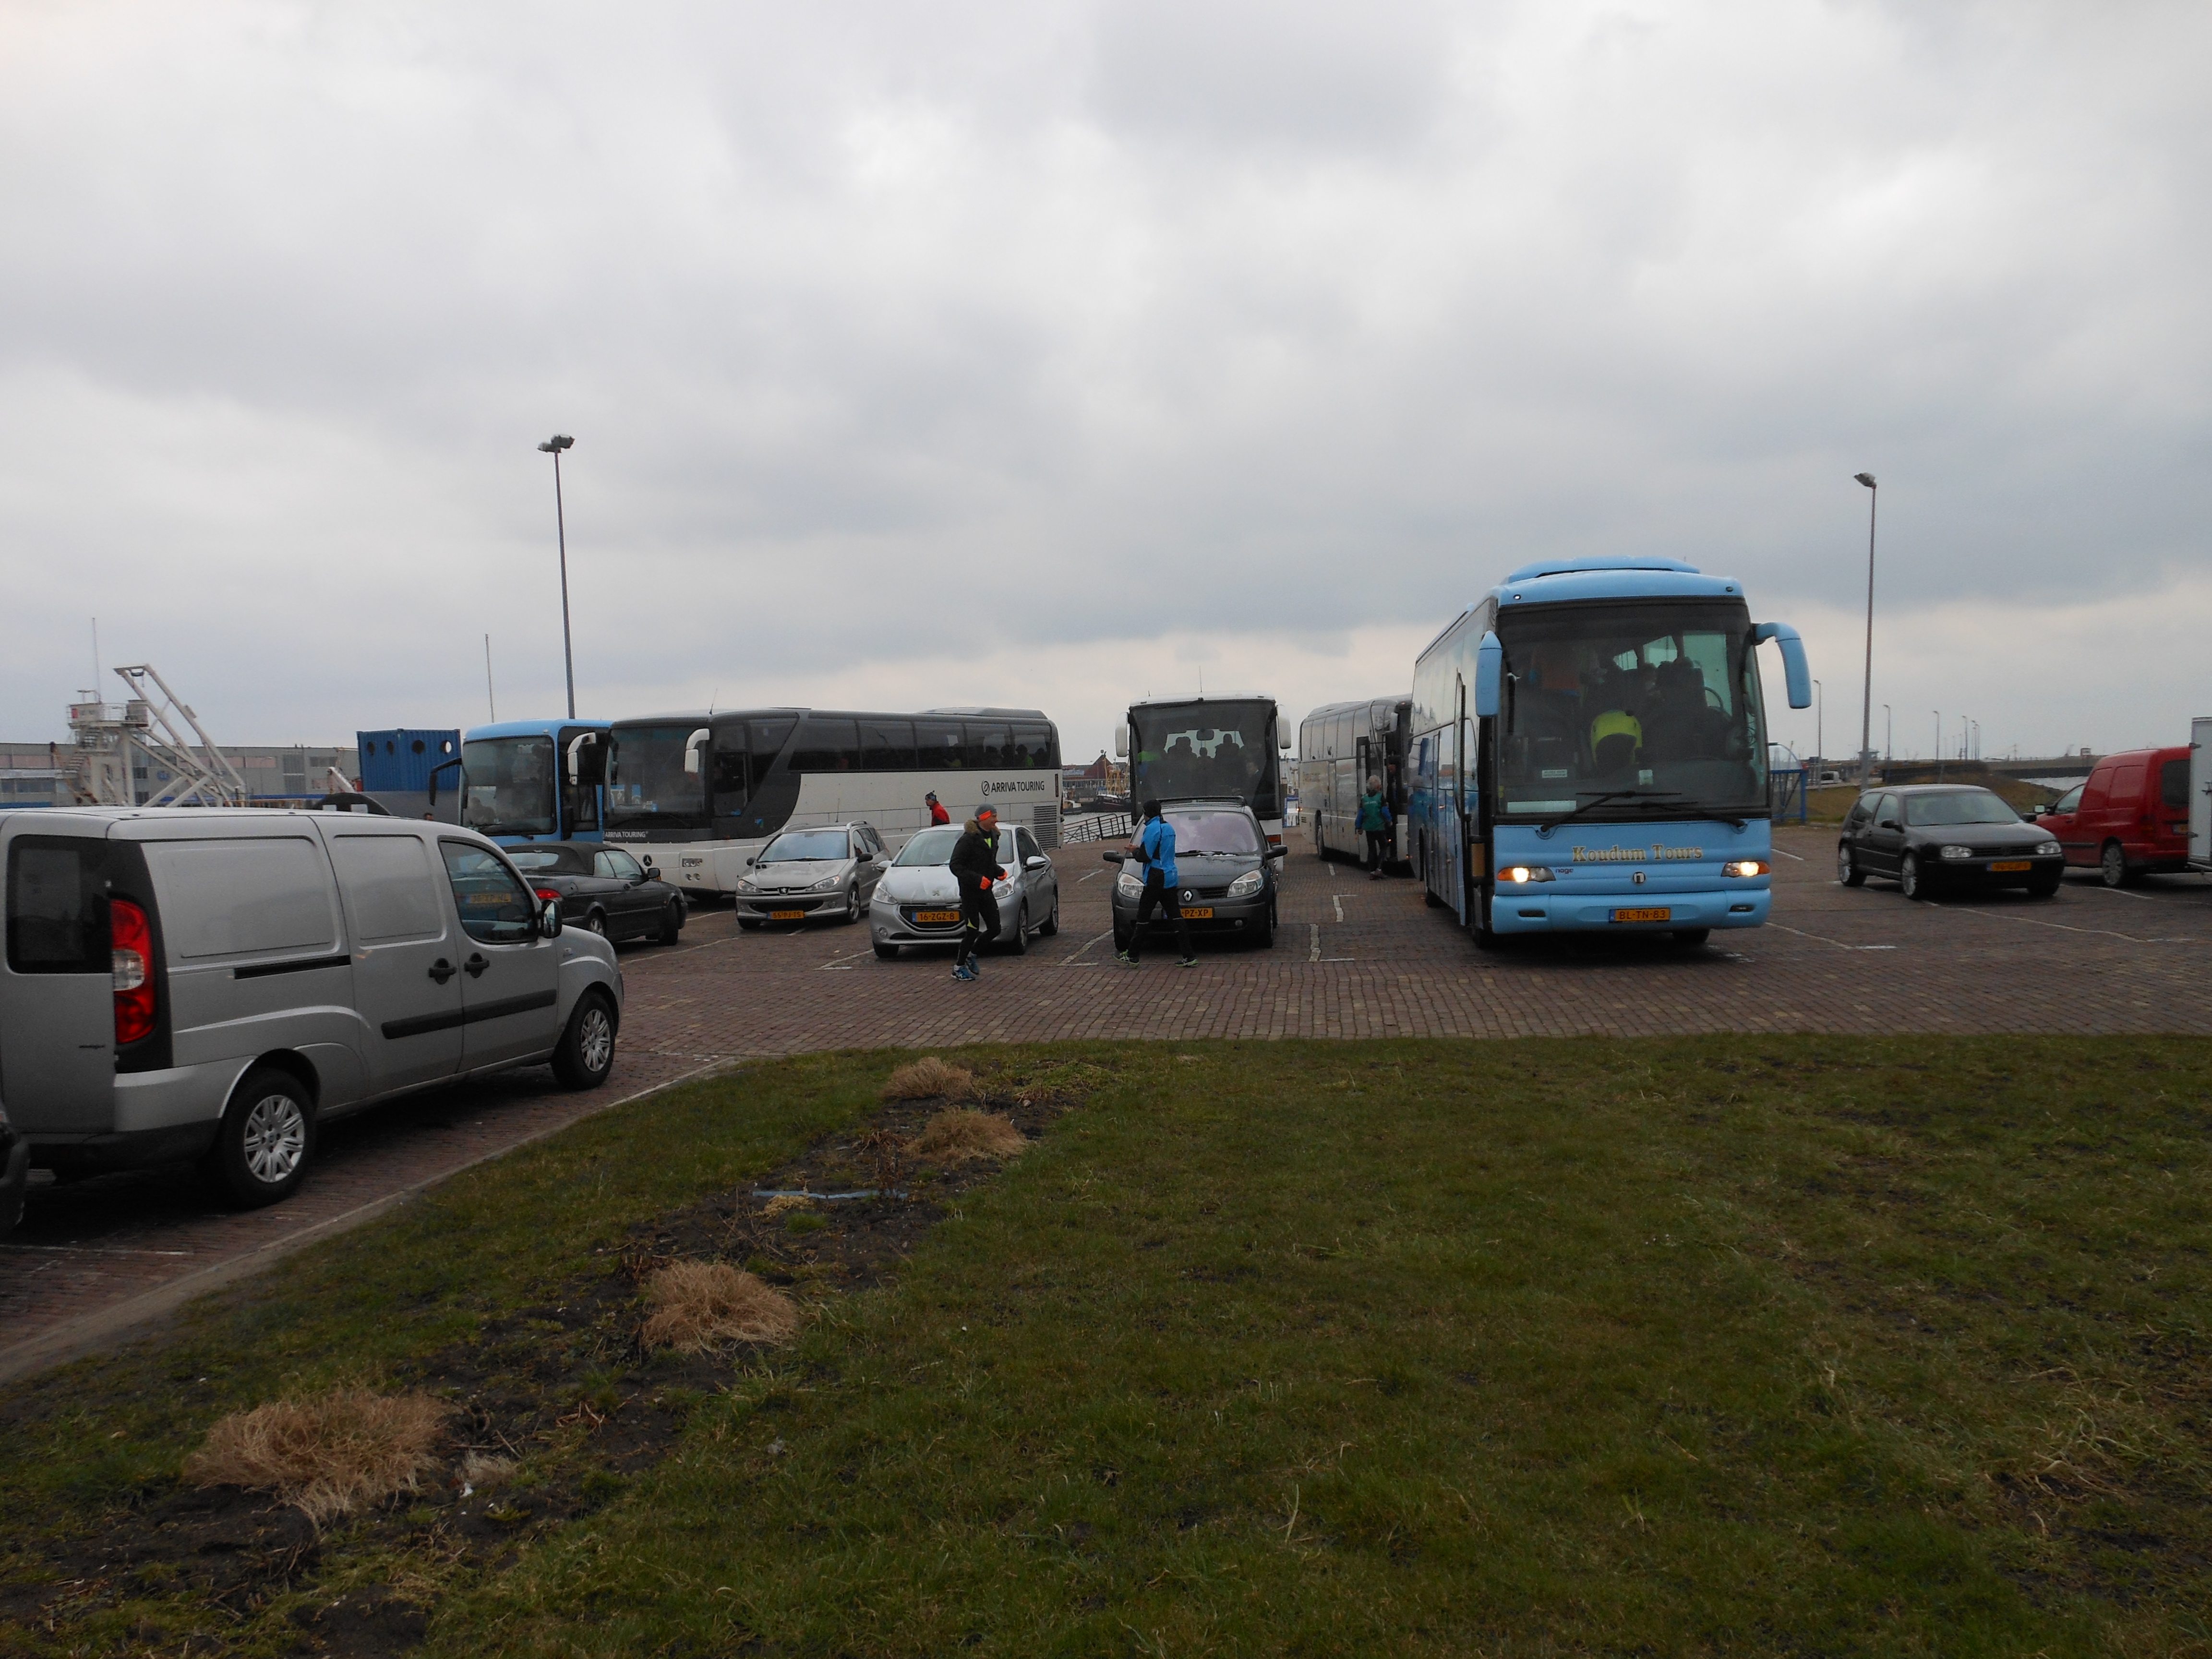 2013 03 10- Afsluitdijkrun 2013 05 - de Bussen, Den Oever  - foto Rients Jorna